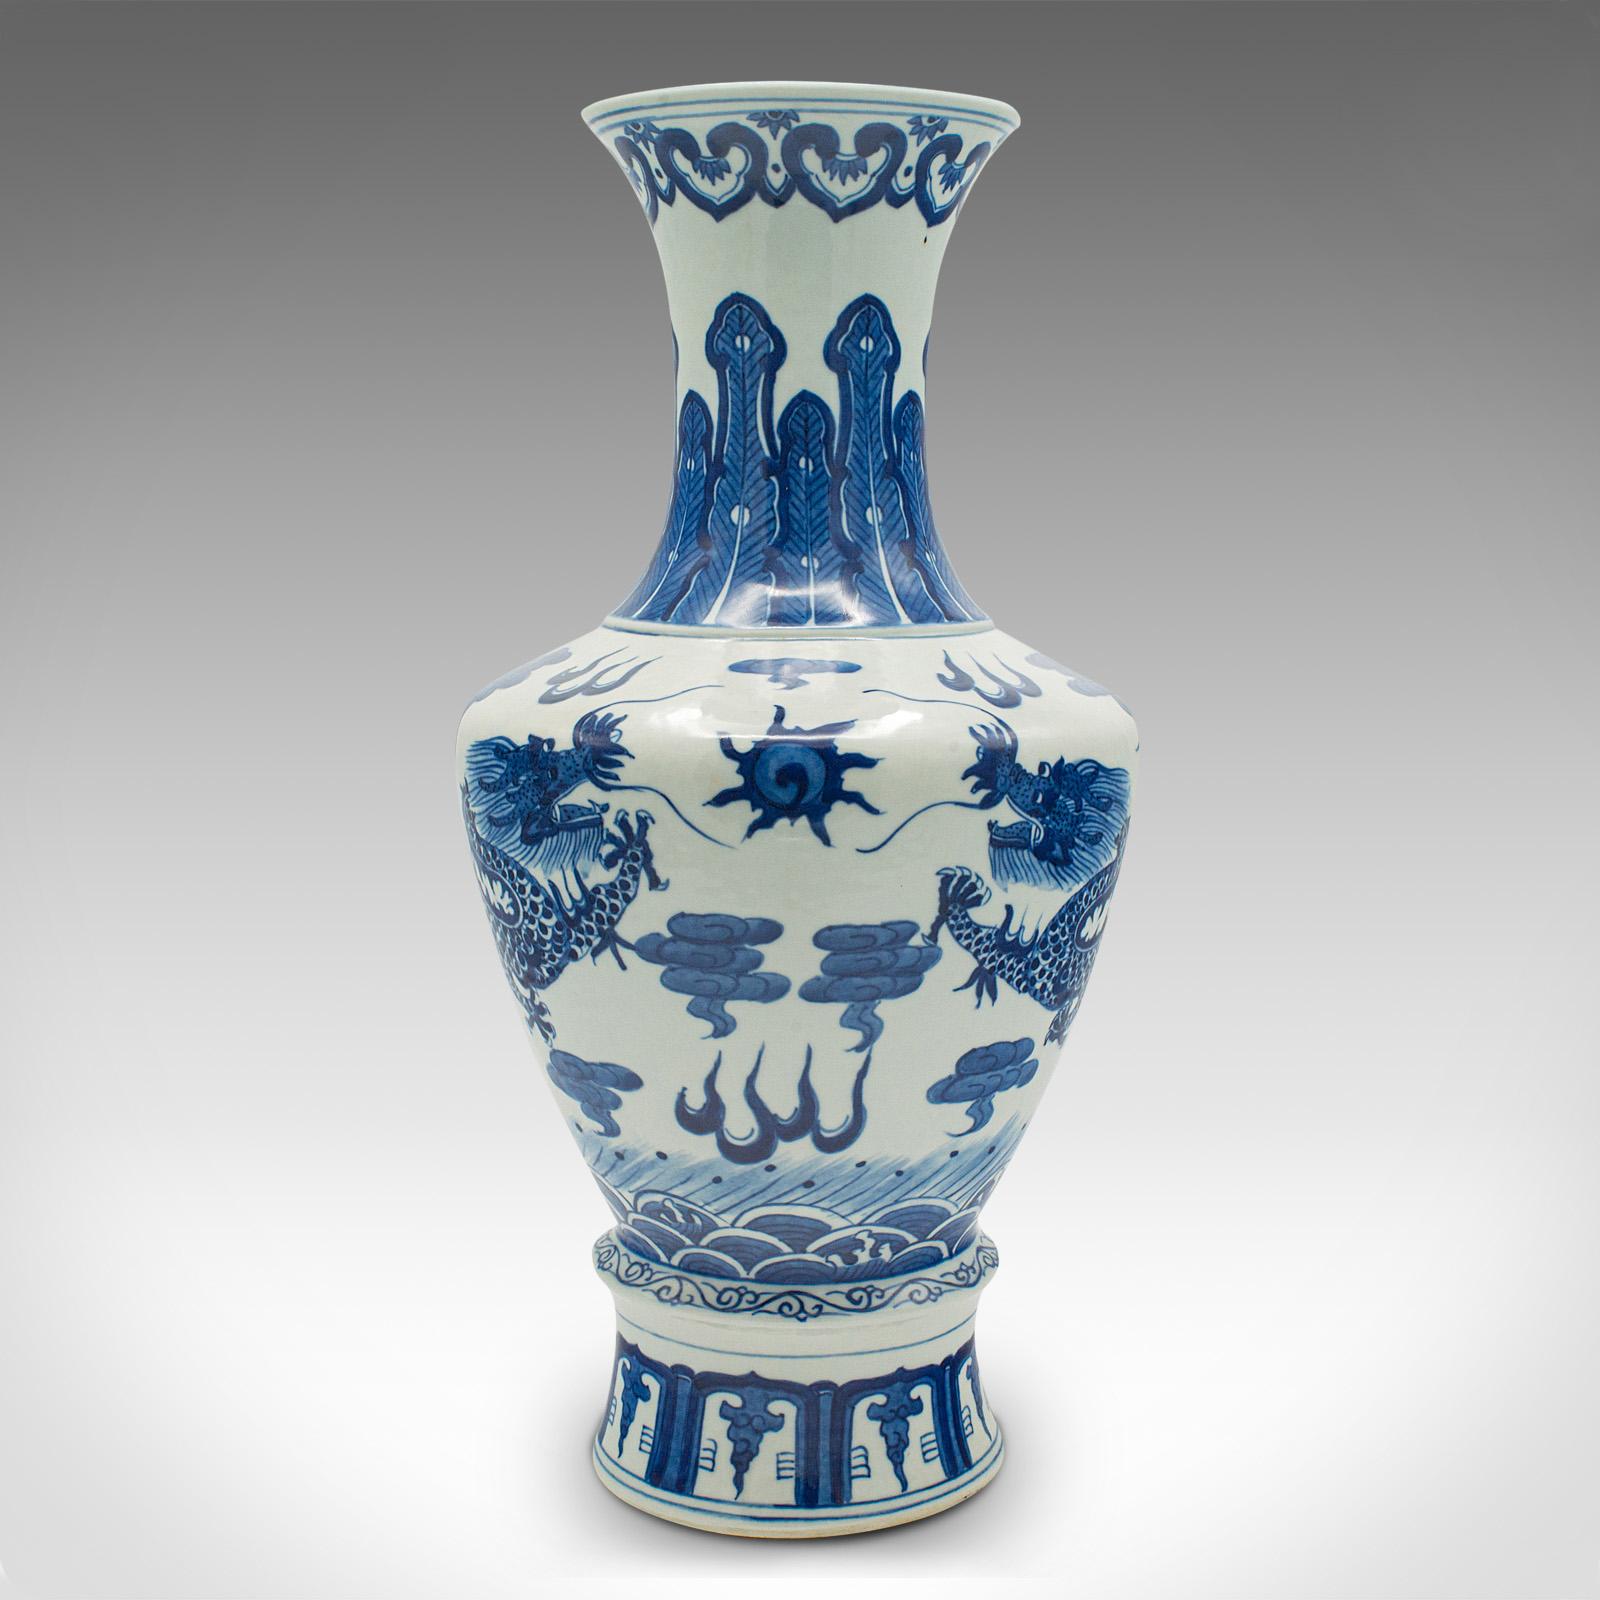 Il s'agit d'un grand vase vintage blanc et bleu. Balustre à fleurs décoratif en céramique chinoise, datant de la fin de la période Art déco, vers 1940.

Vase à fleurs décoratif de taille généreuse avec de fortes connotations orientales
Patine